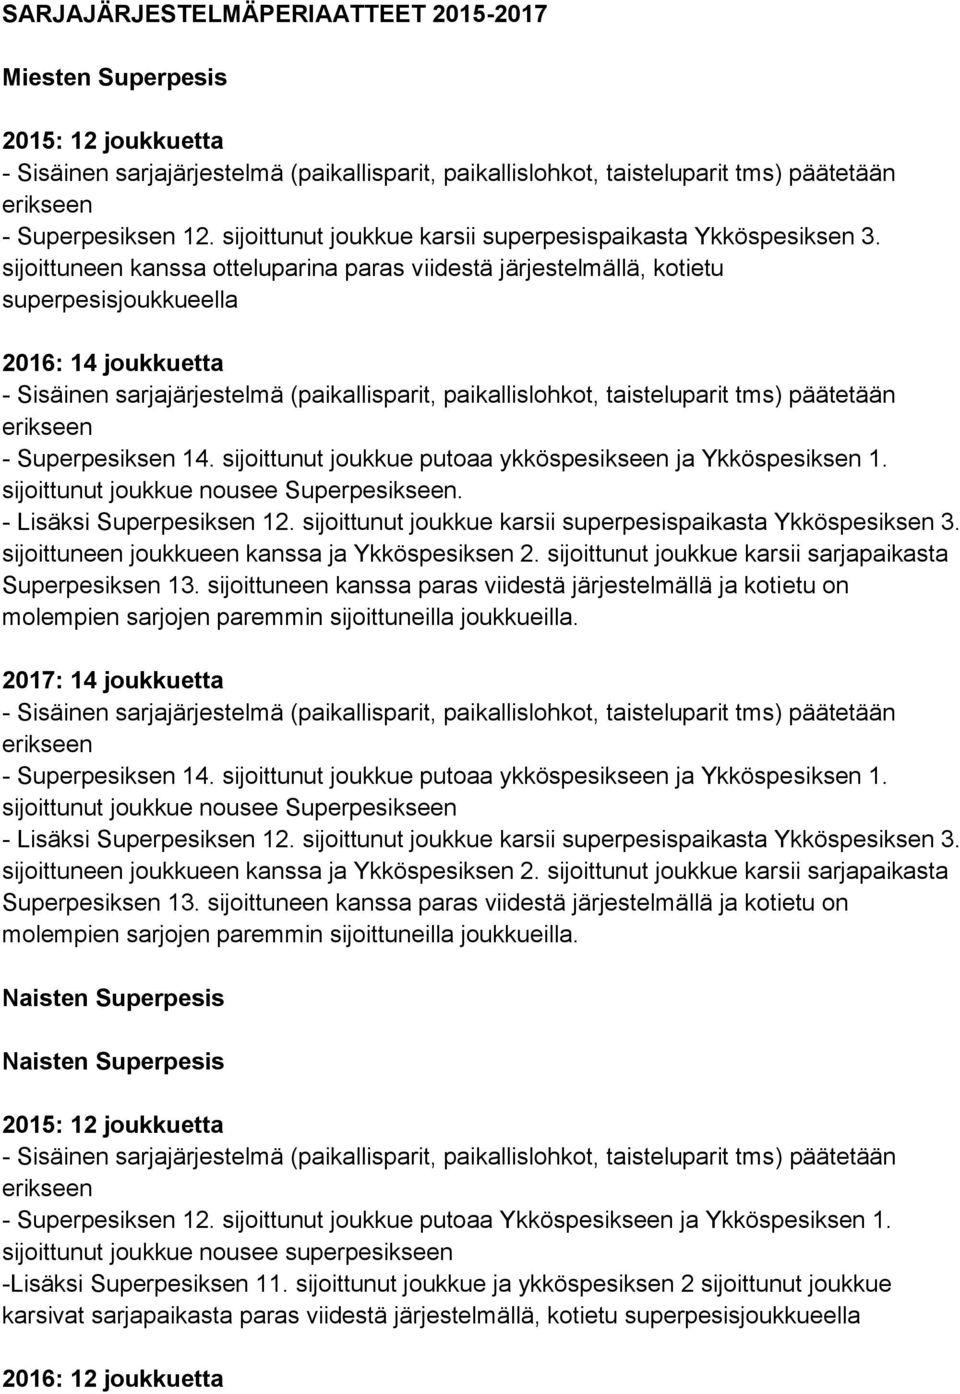 sijoittunut joukkue putoaa ykköspesikseen ja Ykköspesiksen 1.. 2017: 14 joukkuetta - Superpesiksen 14.